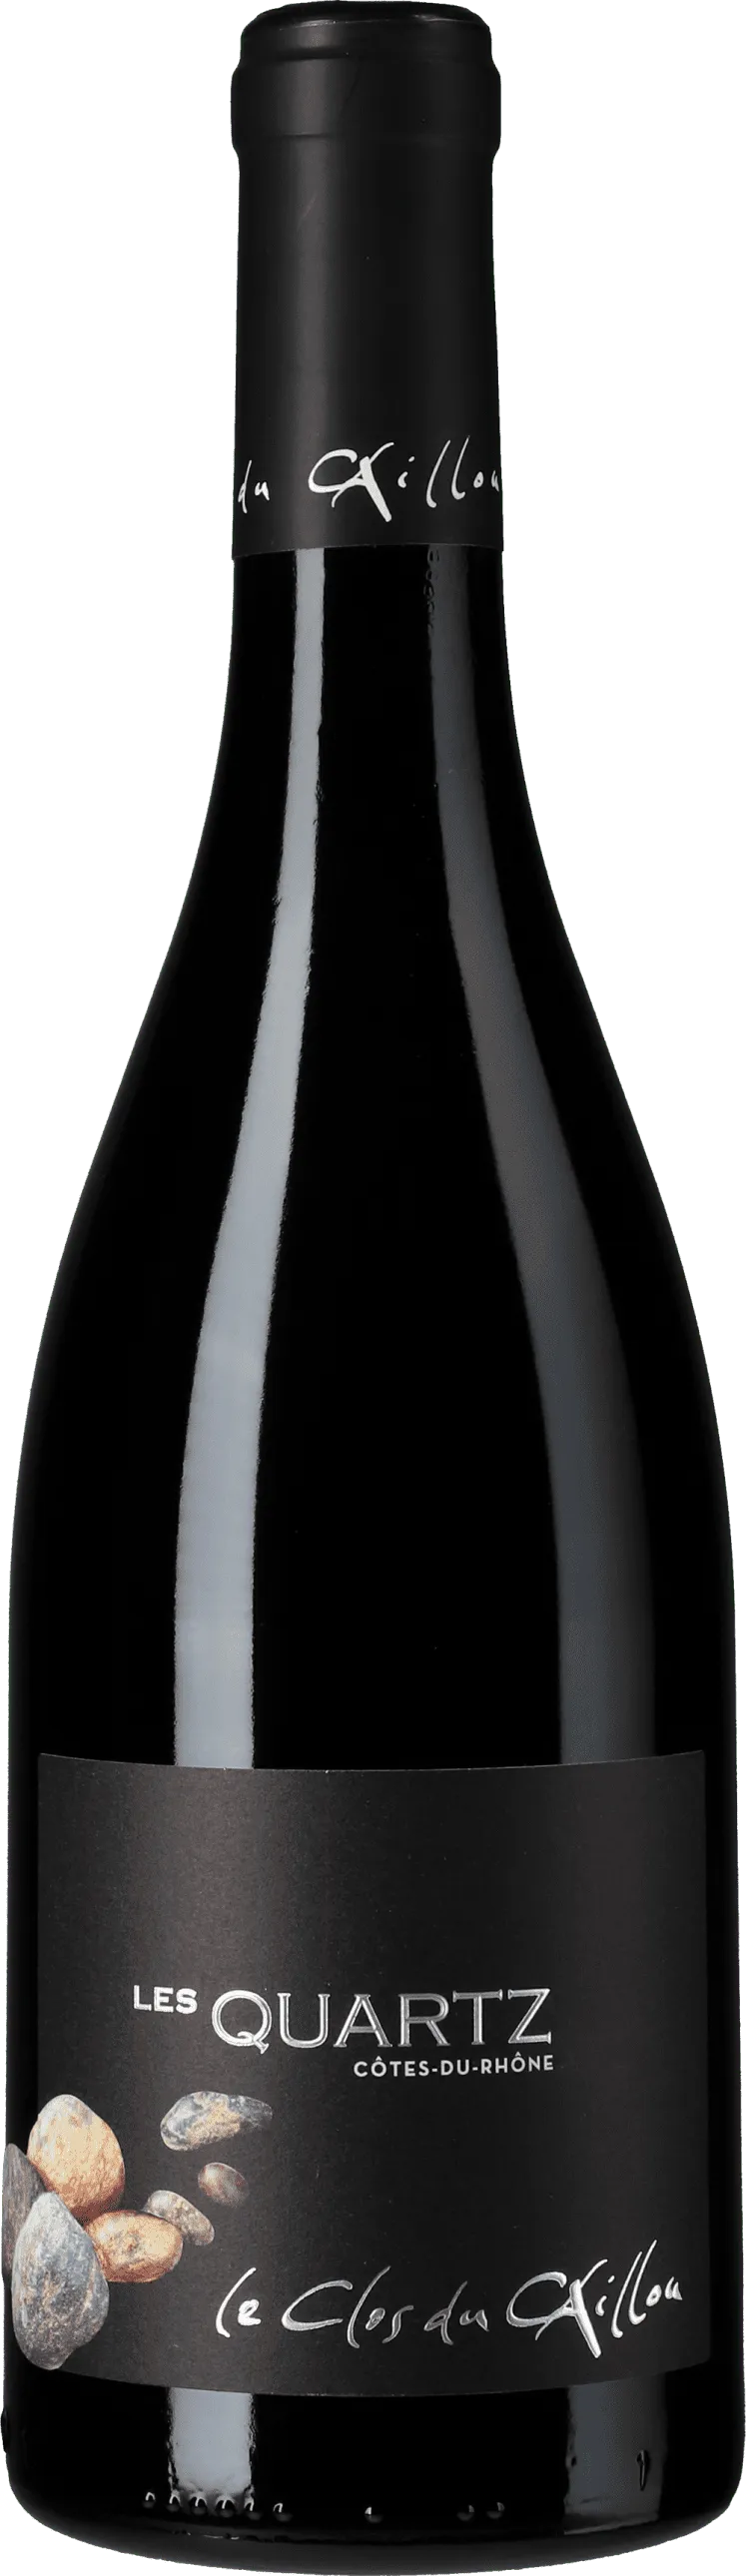 Bottle of Clos du Caillou Côtes du Rhône Les Quartzwith label visible